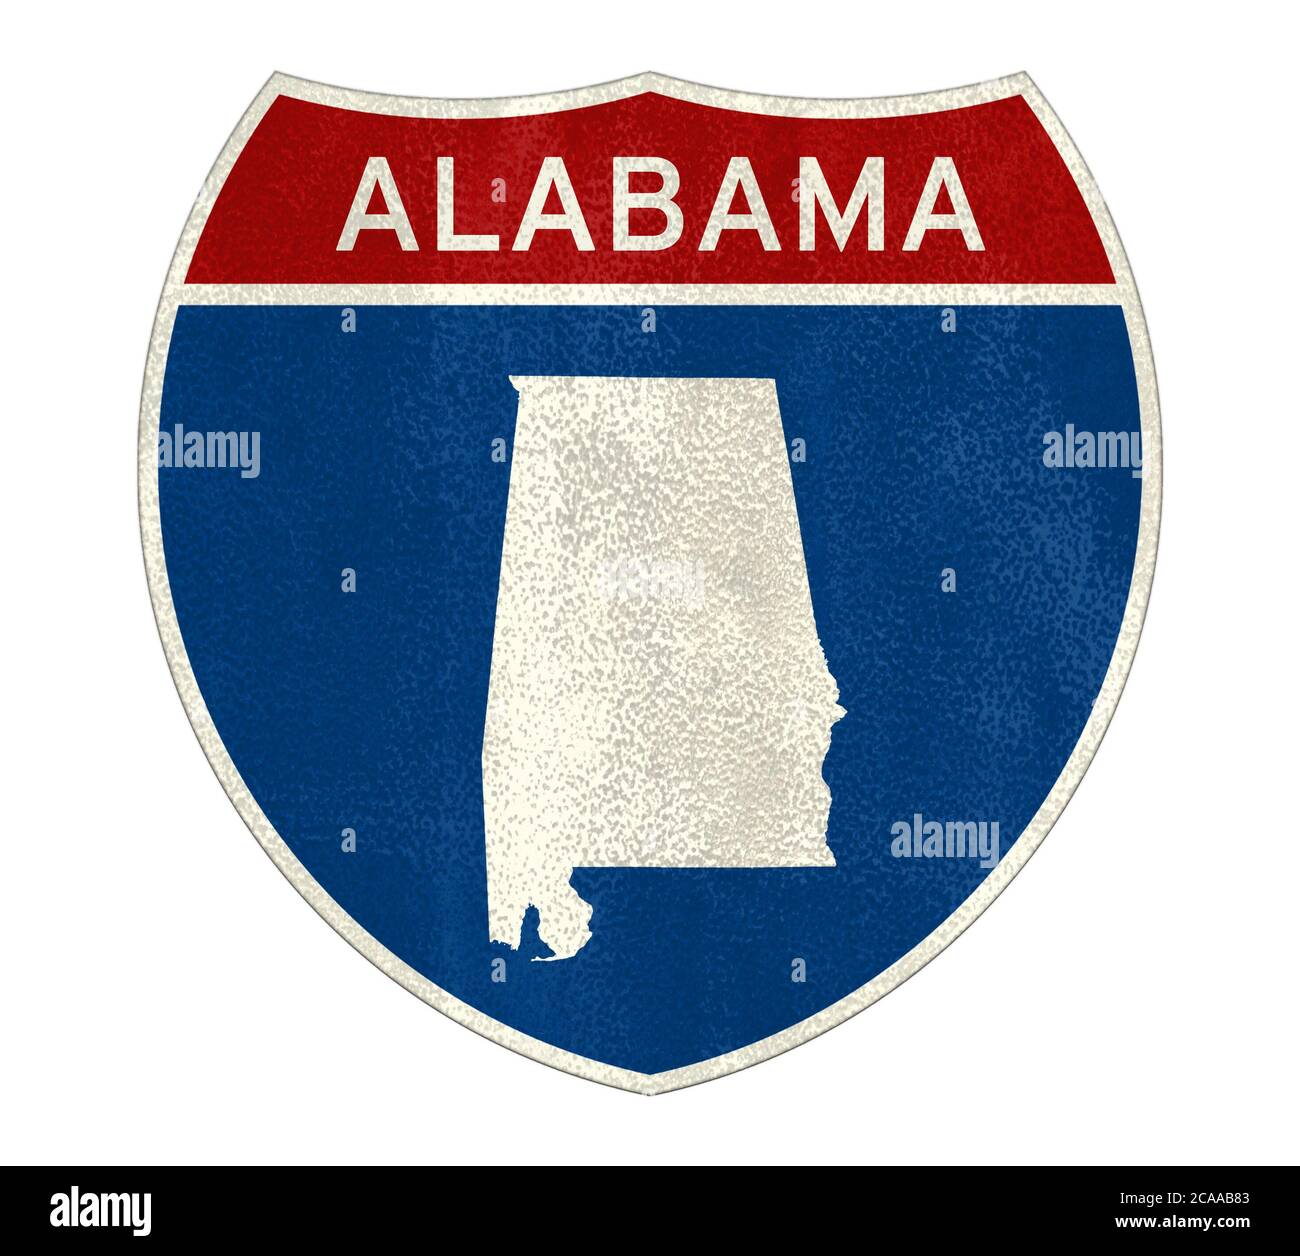 Plan des panneaux routiers de l'Alabama Banque D'Images